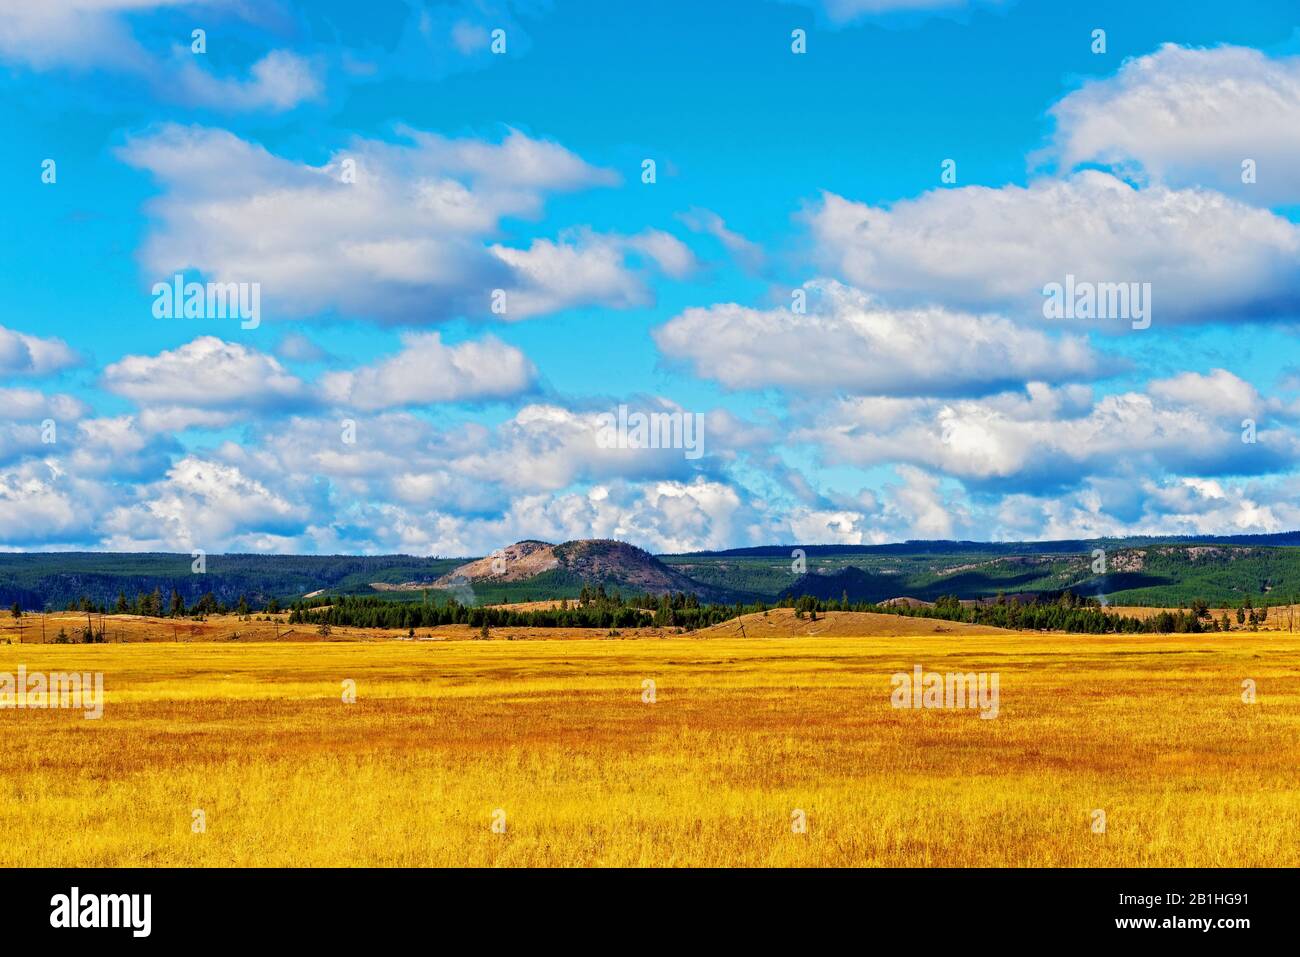 Goldene Felder von organischem Getreide wachsen un der blaue Himmel mit weißen, flauschigen Wolken und grünen Bergen darüber hinaus. Stockfoto